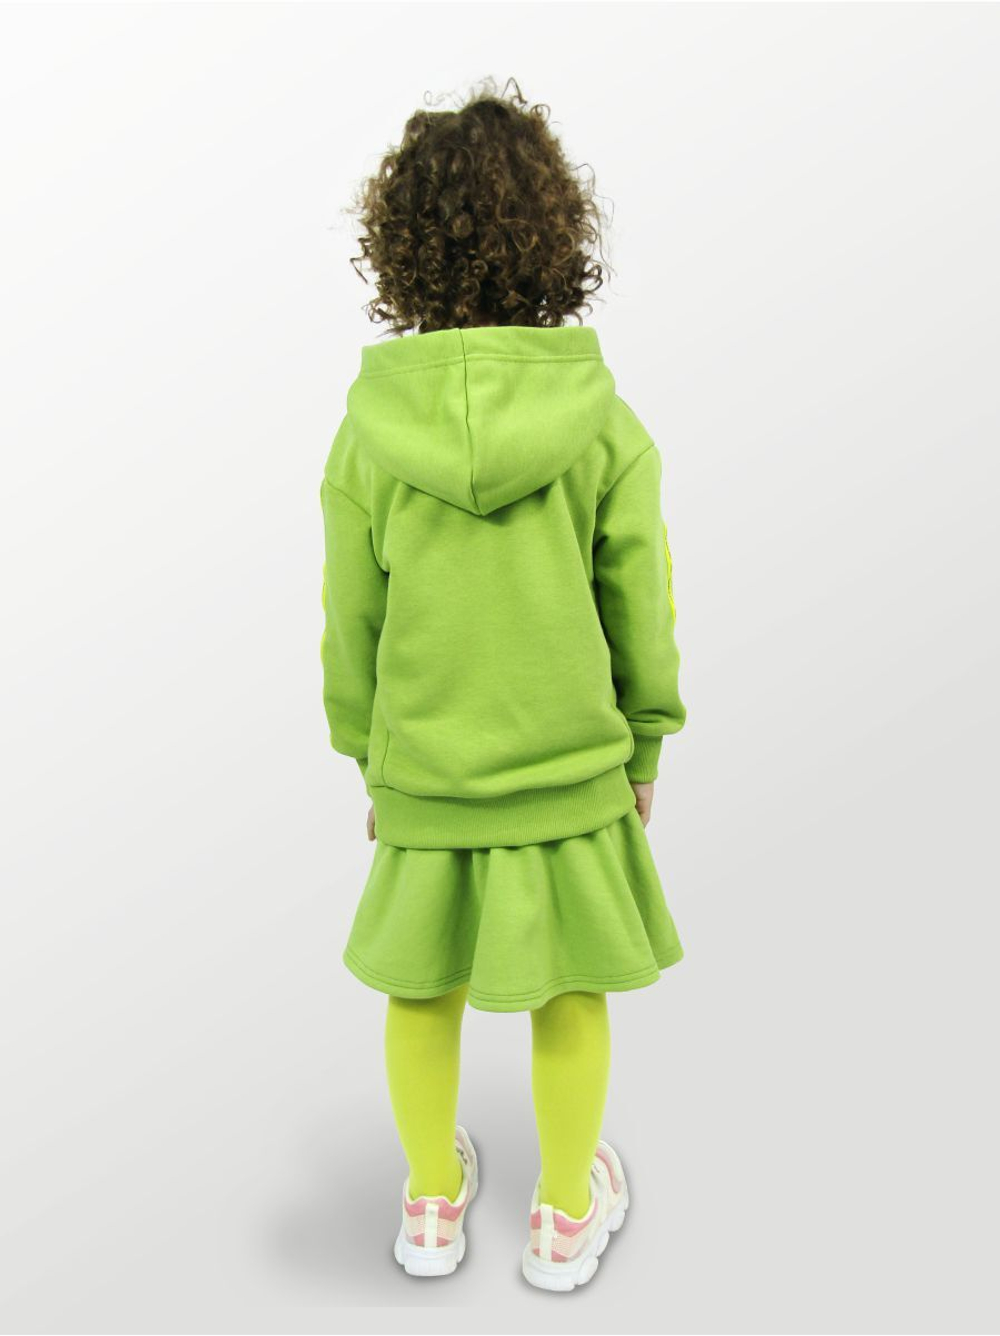 Худи для детей, модель №1, рост 116 см, зеленый